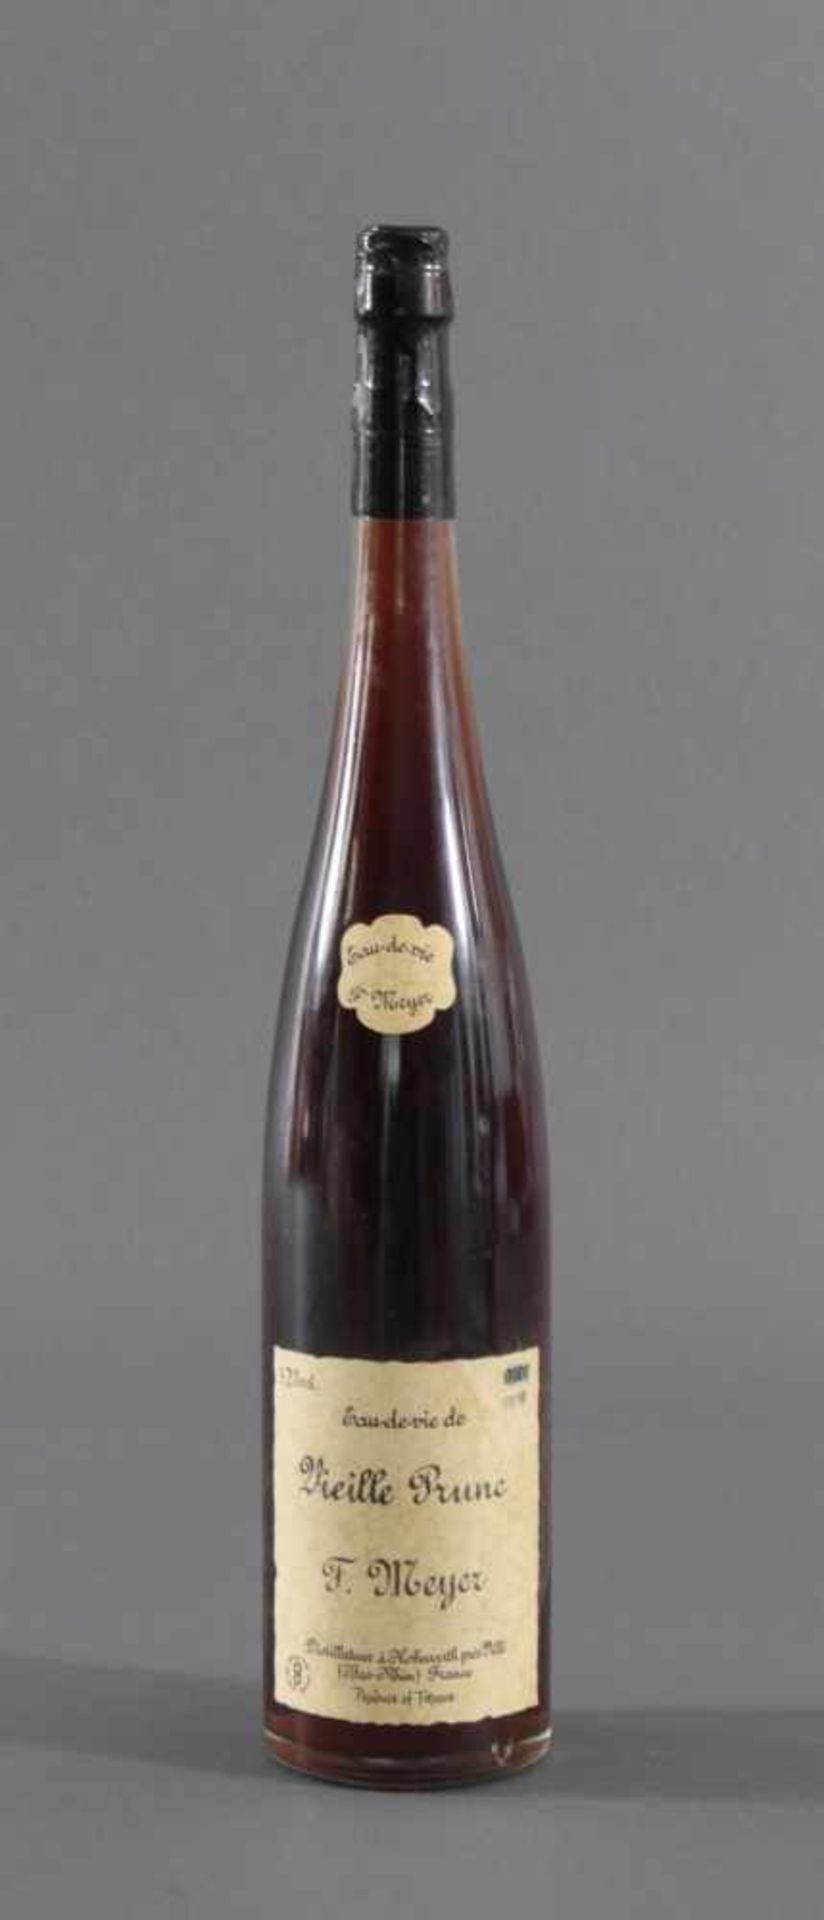 Eau de vie de Vieille Prune, F. Meyer1,5 Liter Flasche, 42% vol.